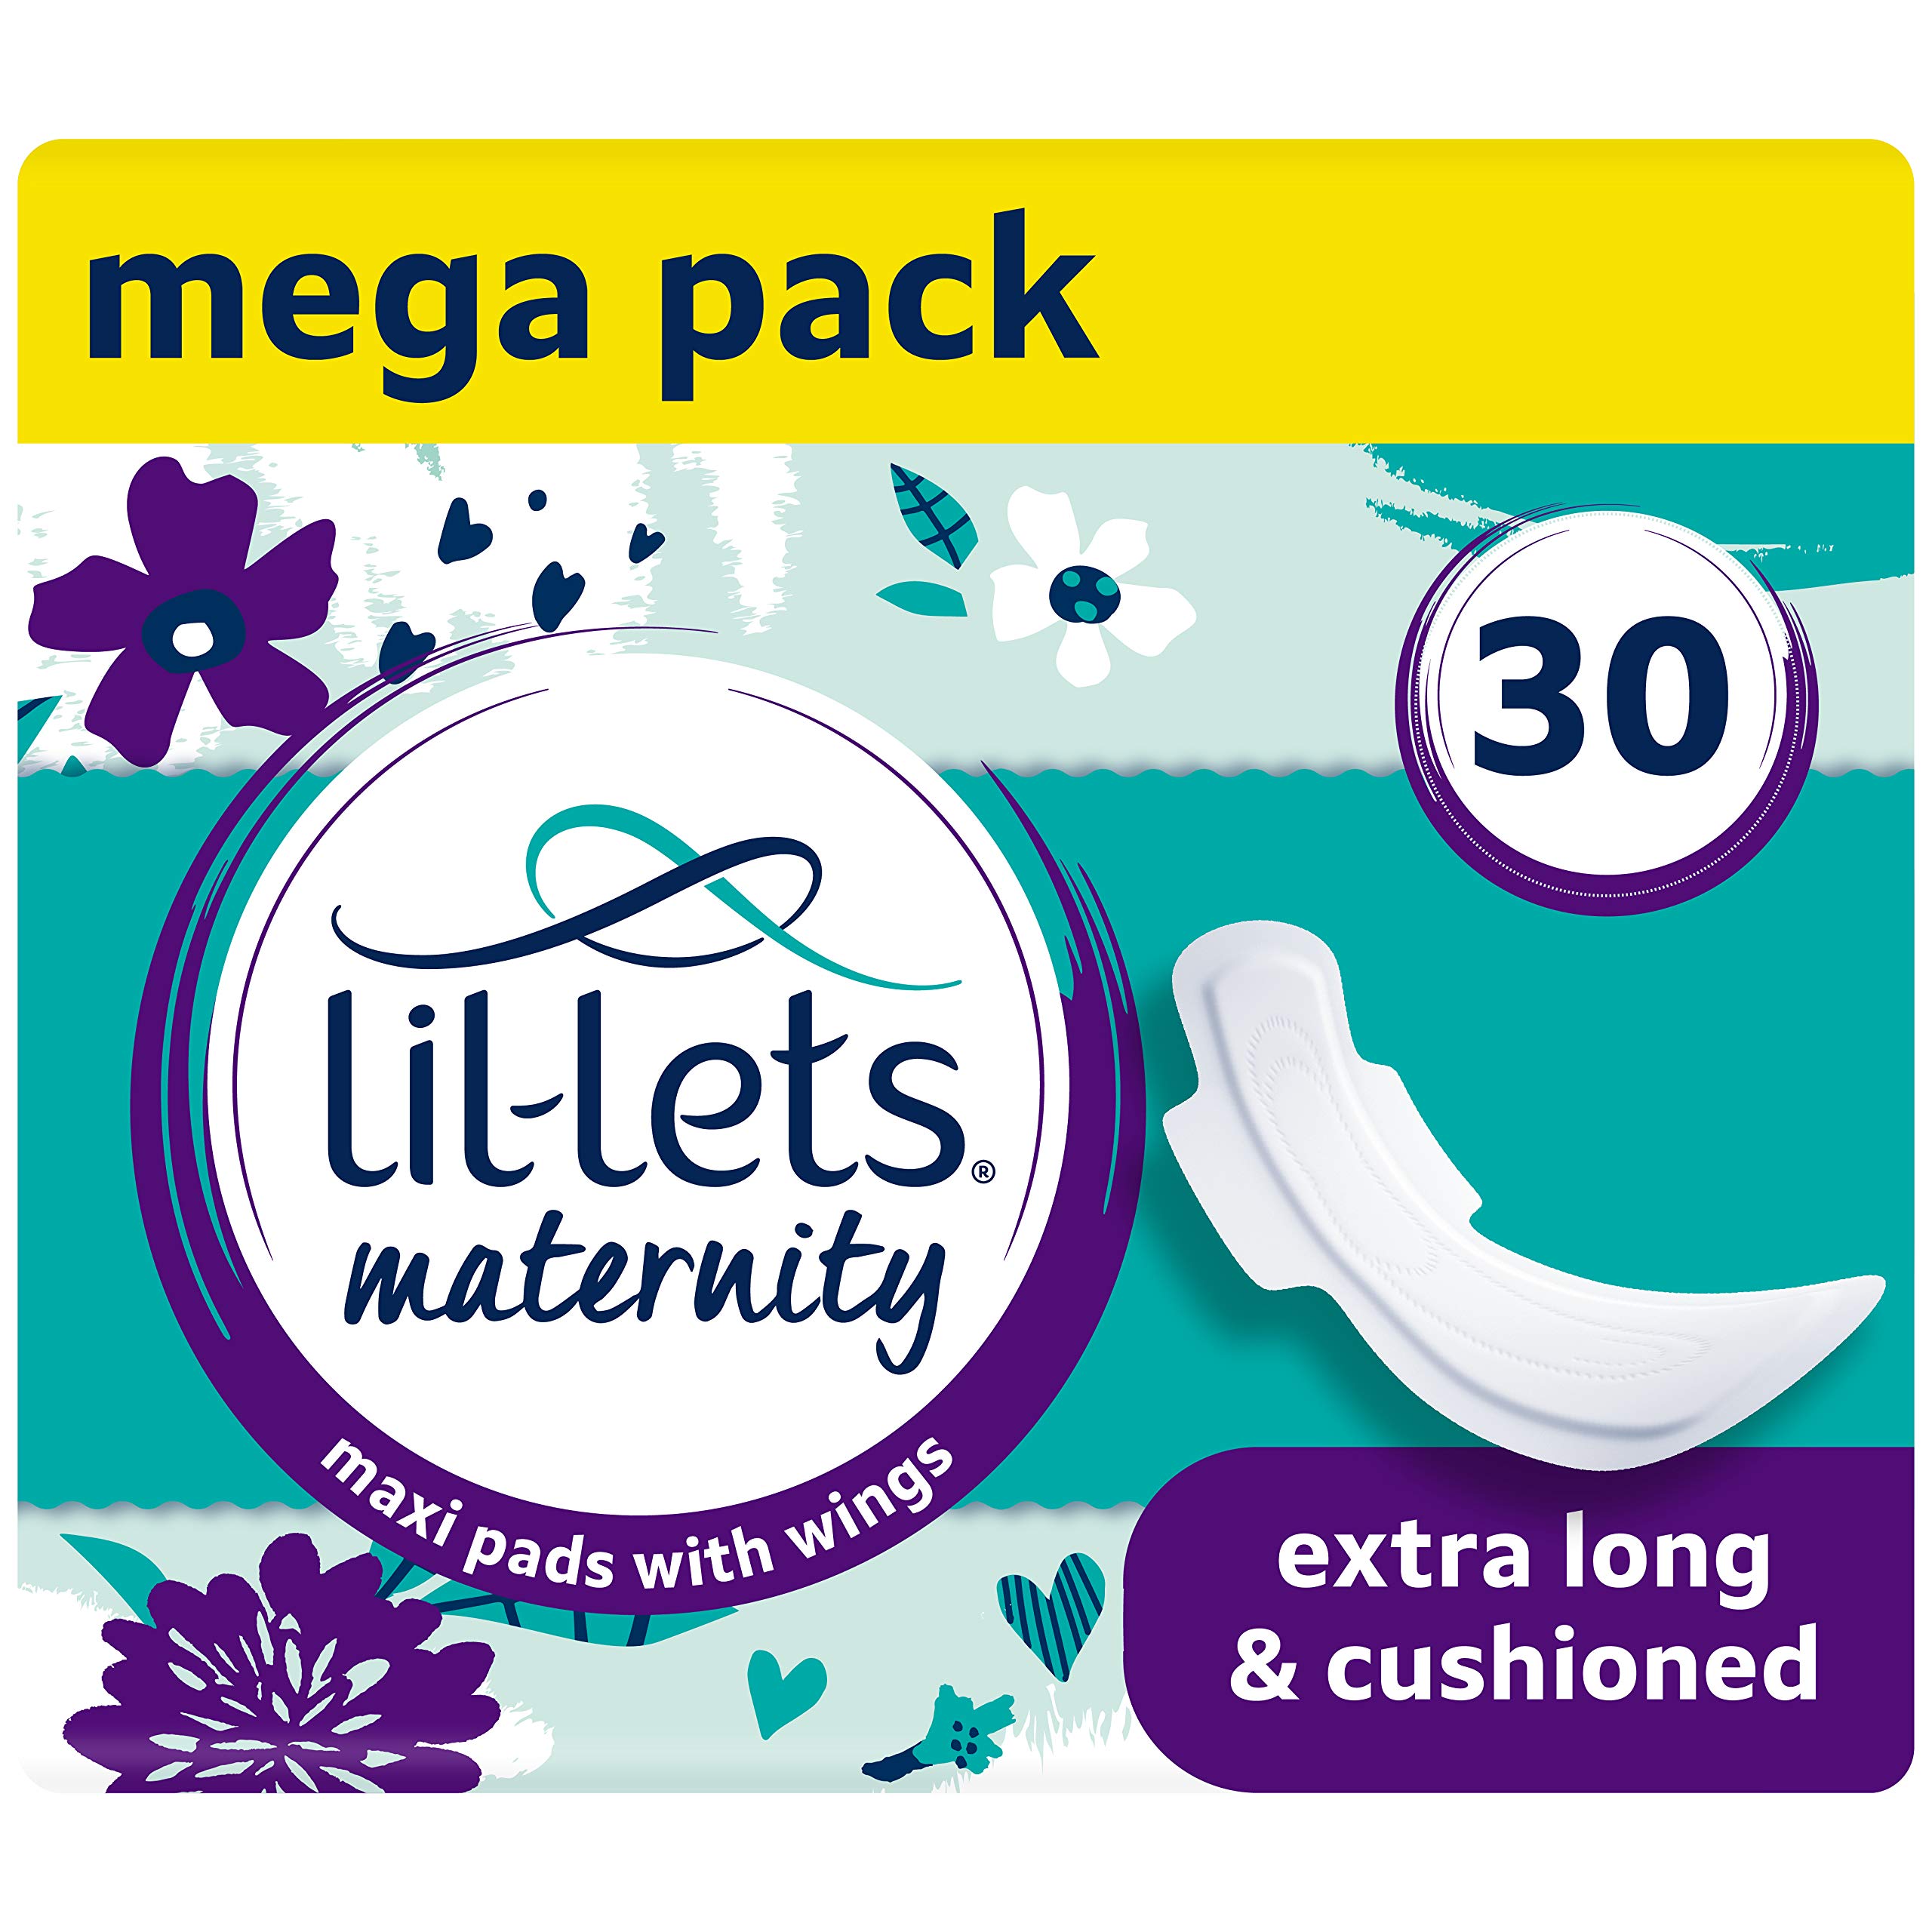 Lil-Lets Schwangerschaftseinlagen, extra lange, dicke Maxi-Handtücher, mit Flügeln, 3 Packungen mit 10 Stück, unverzichtbar nach der Geburt oder nach der Geburt (Verpackung kann variieren)